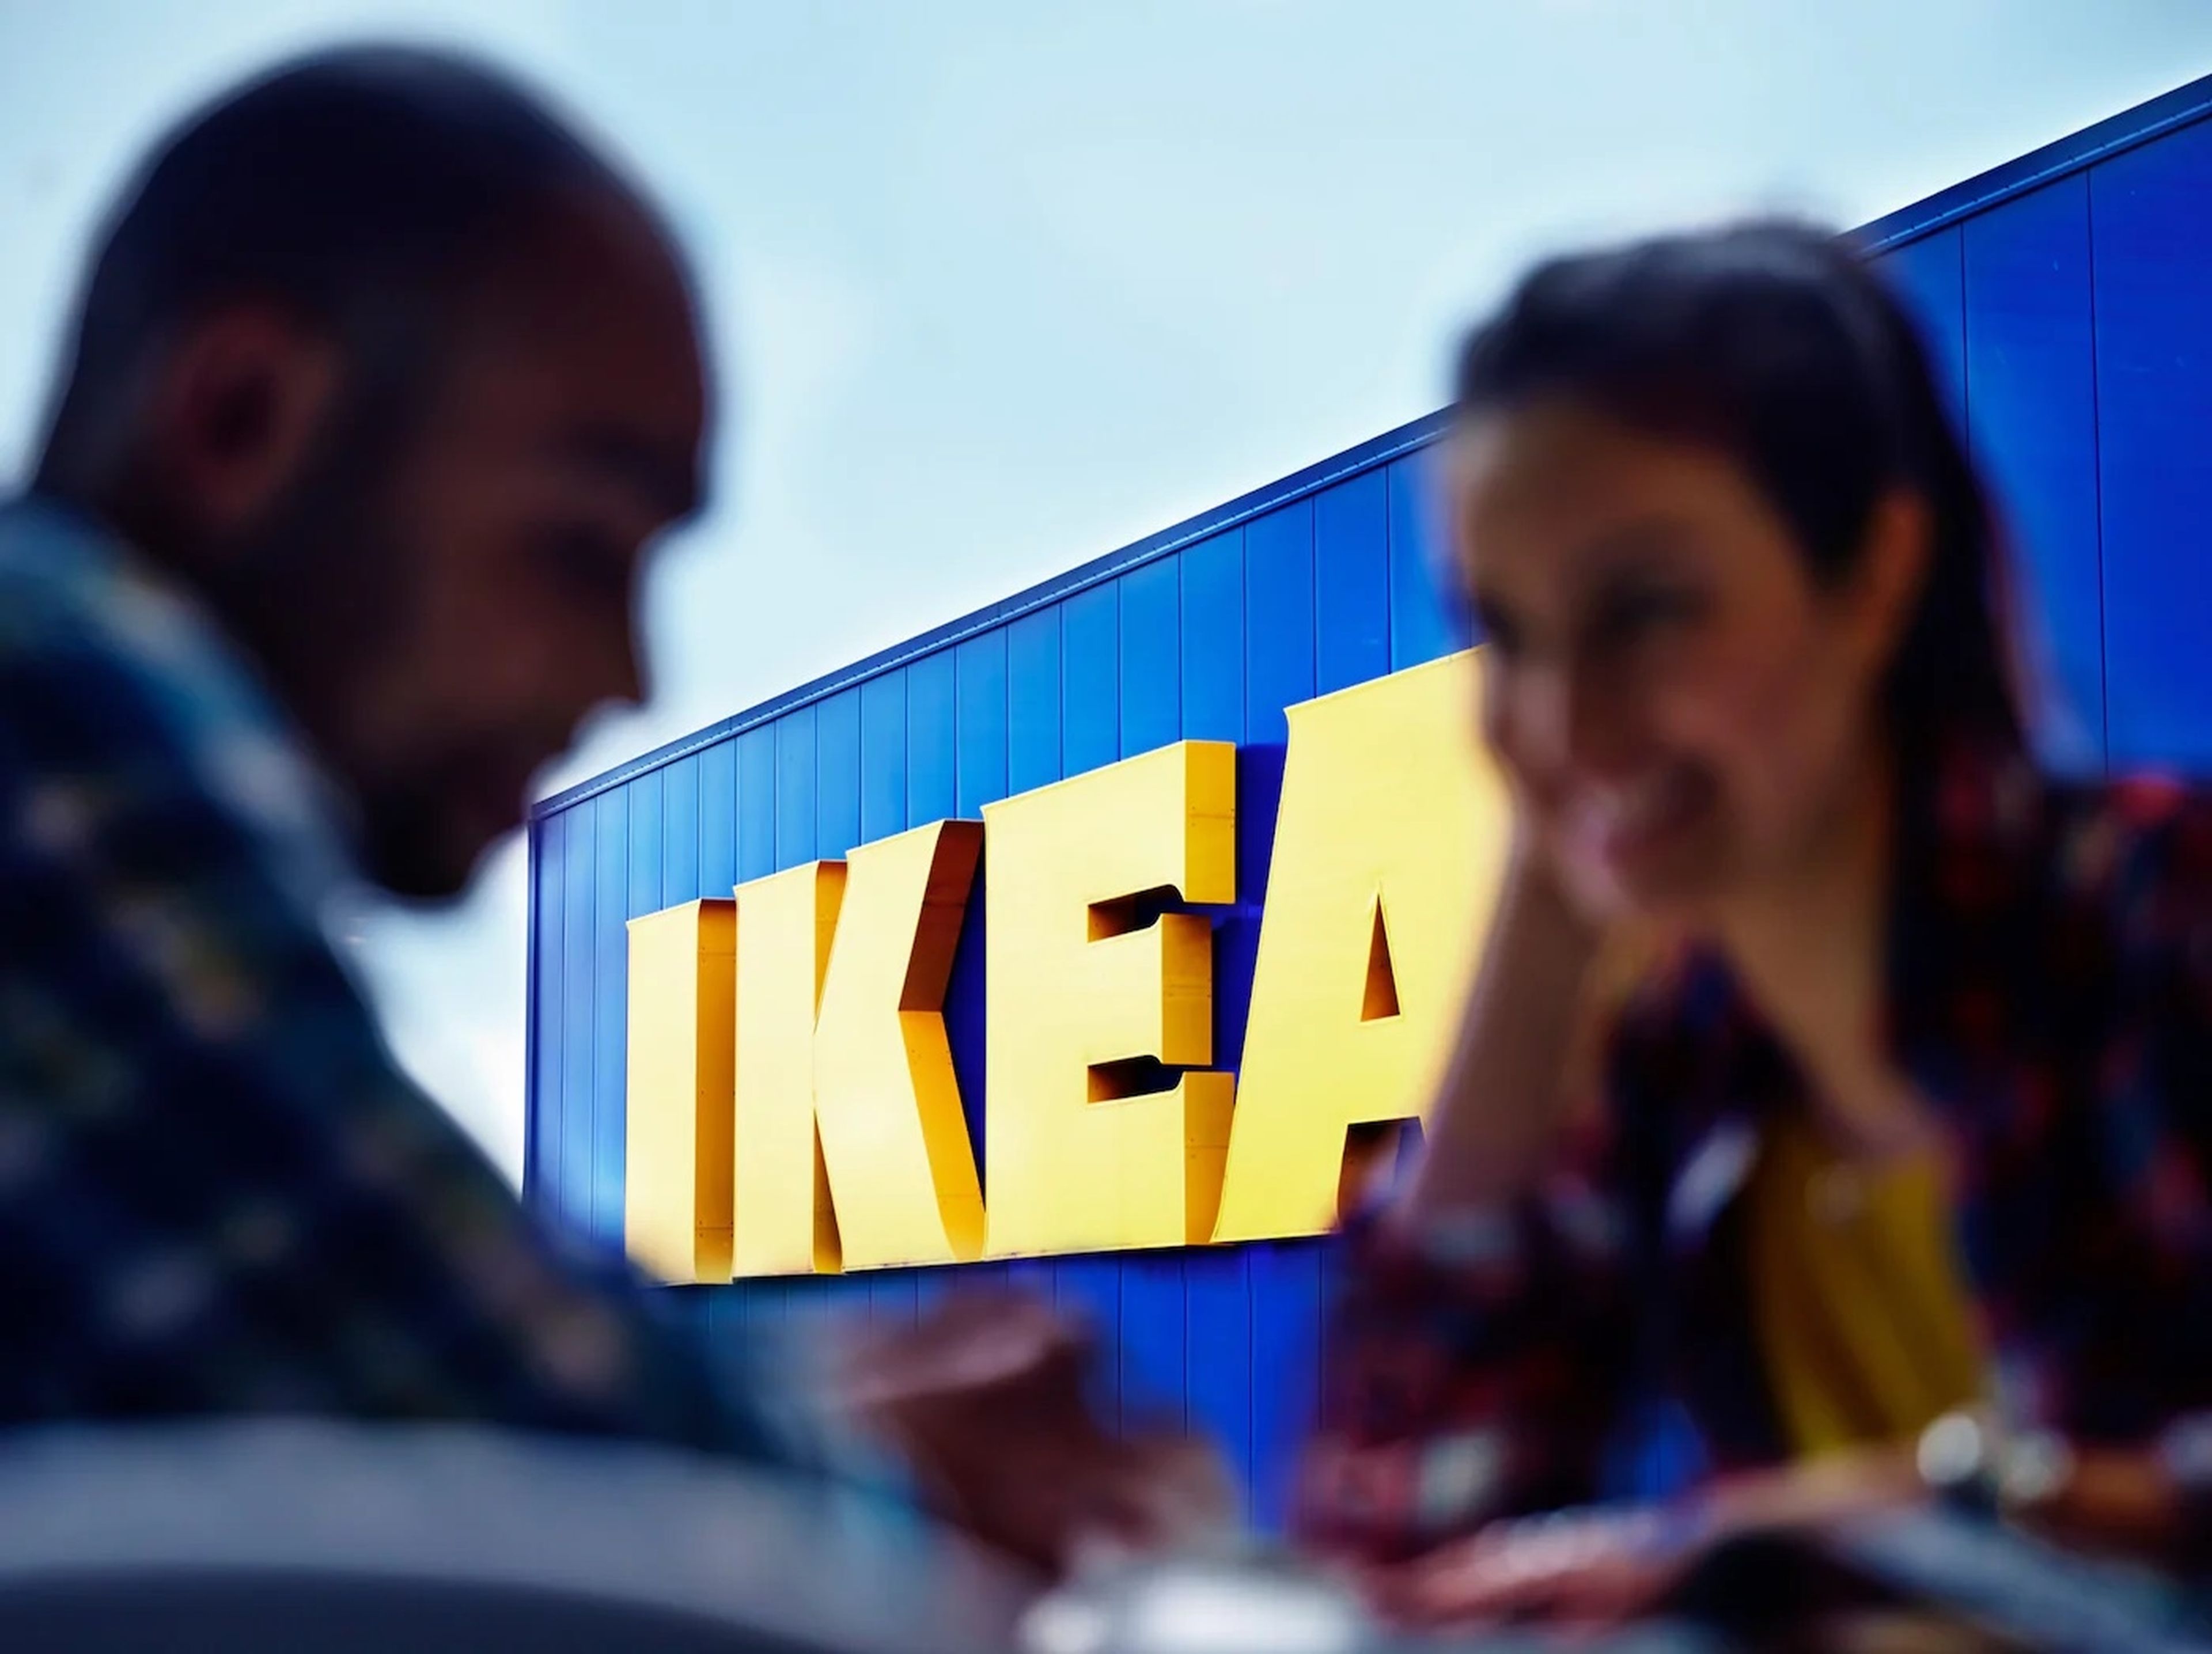 IKEA: historia, curiosidades y primer éxito de la mayor empresa de muebles del mundo